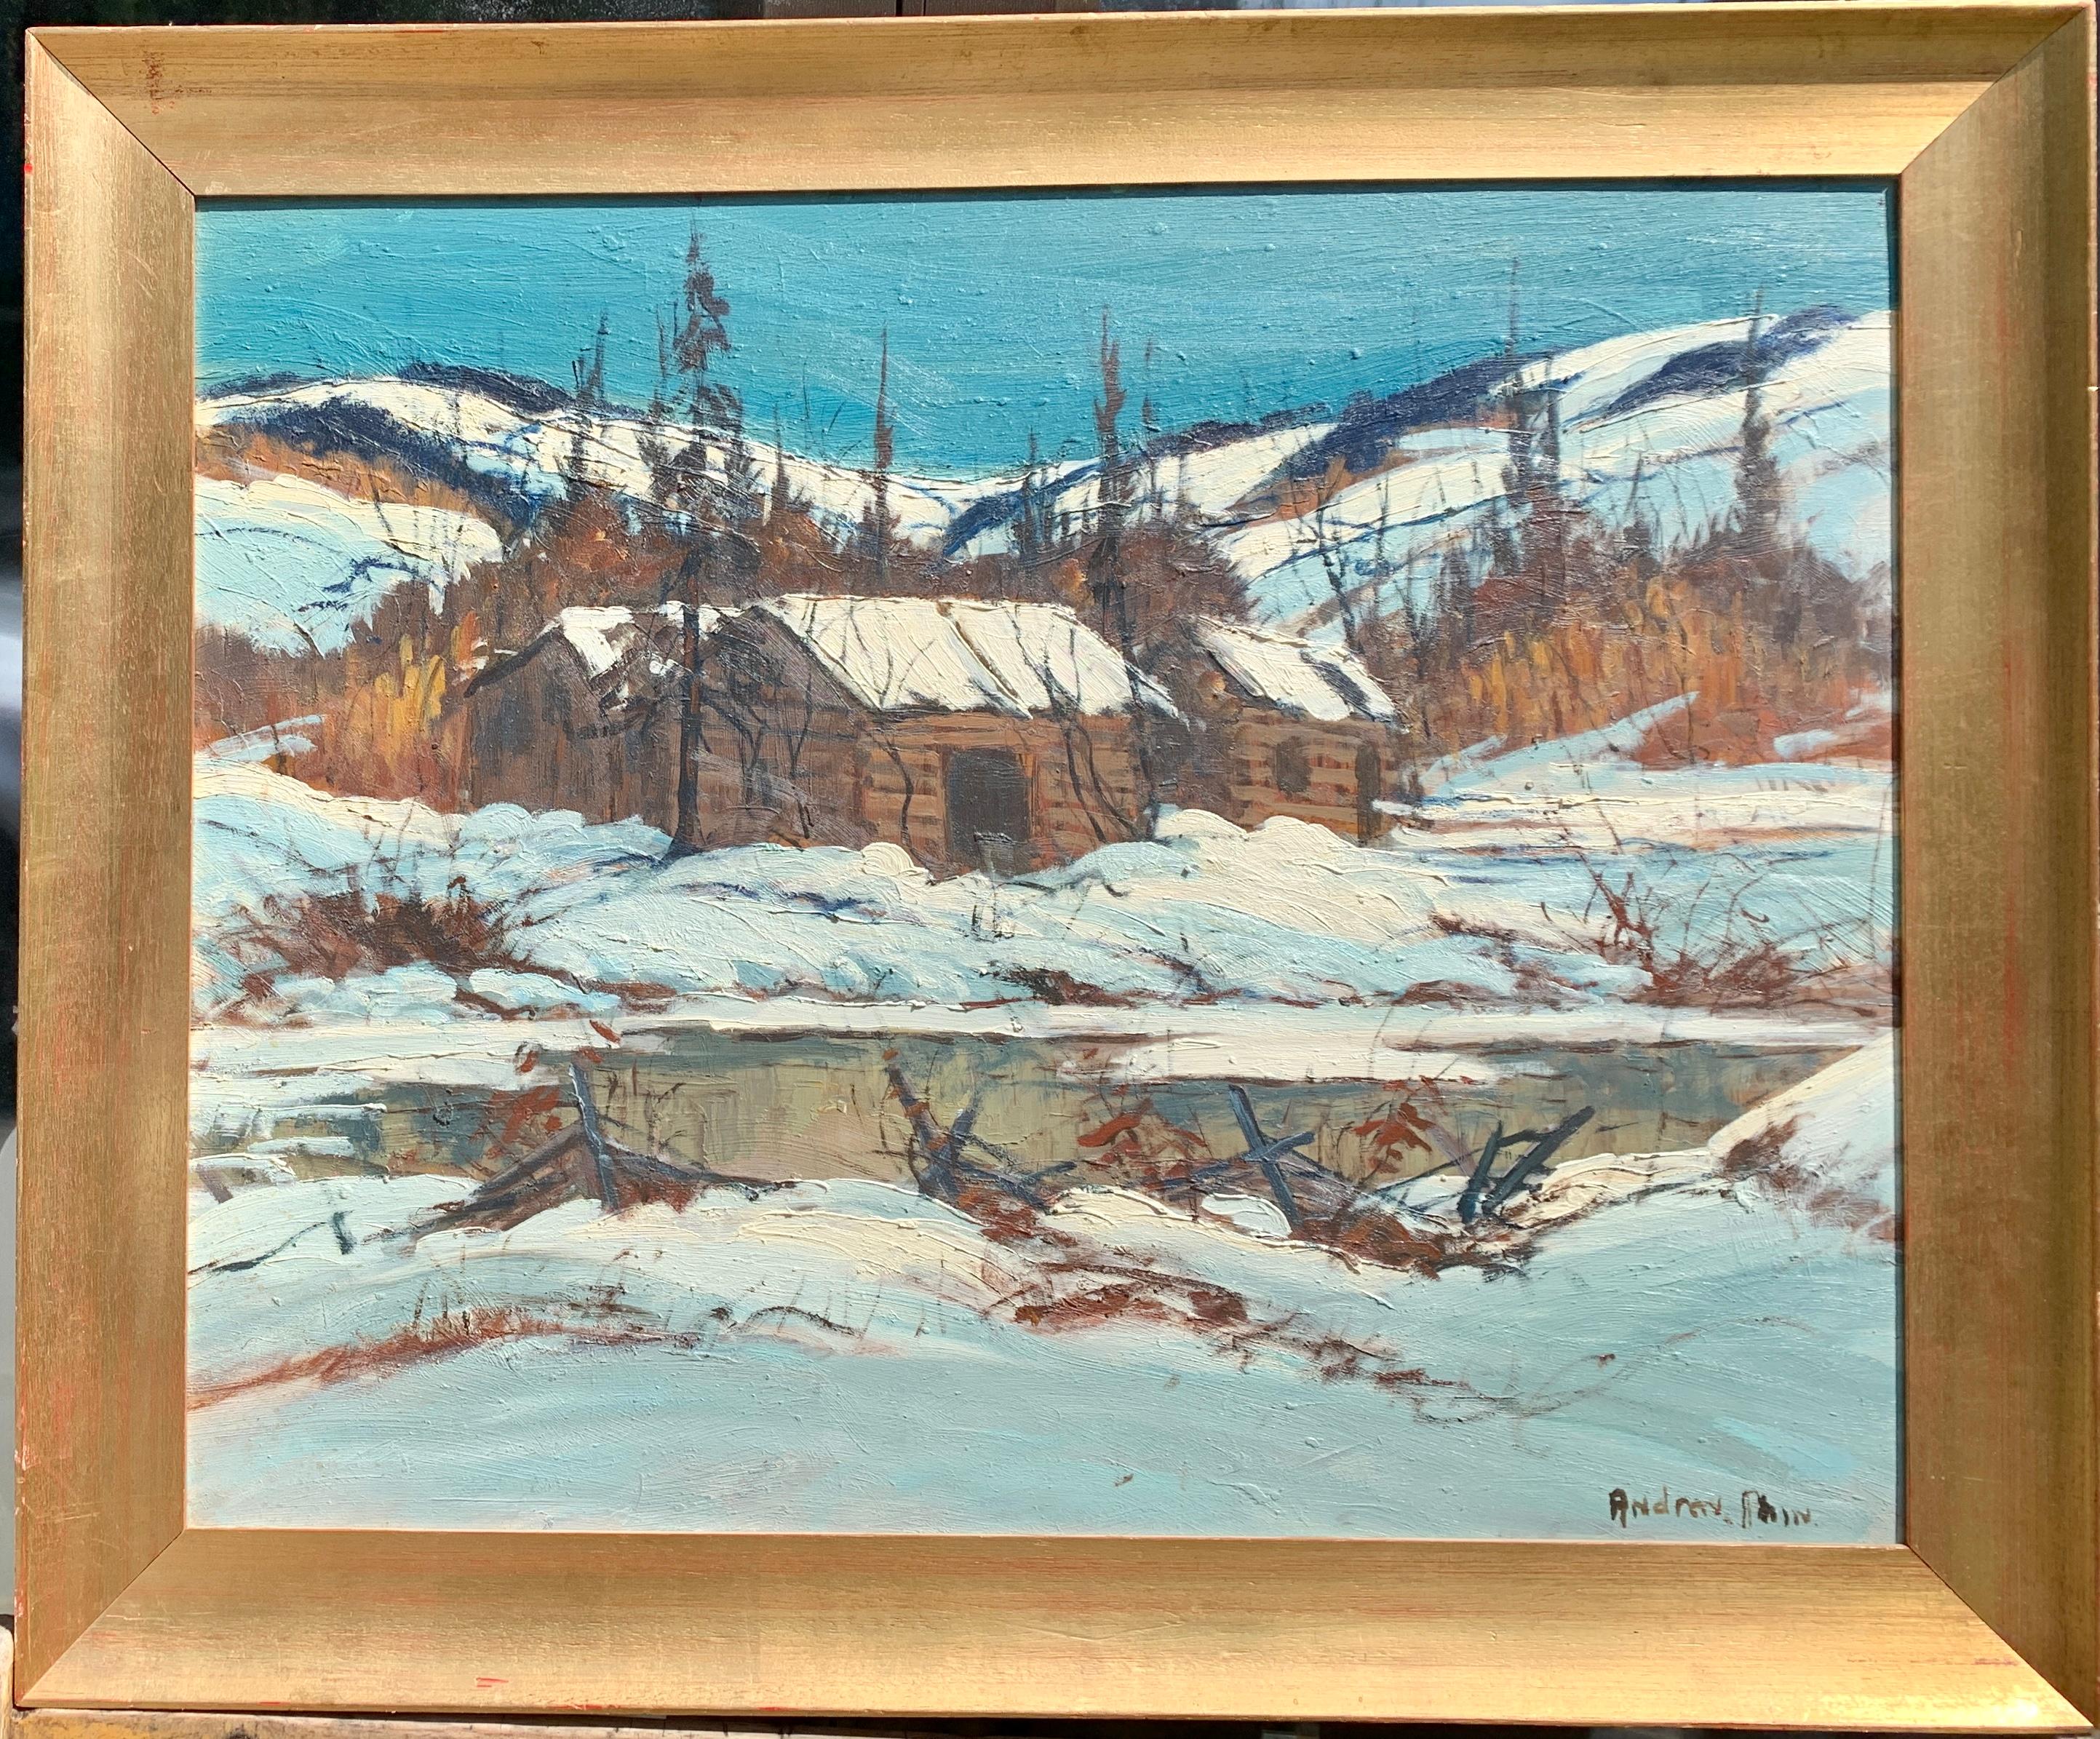 20th century Canadian School Figurative Painting – Kanadische Schneelandschaft aus der Mitte des 20. Jahrhunderts, Halliburton Highlands Ontario